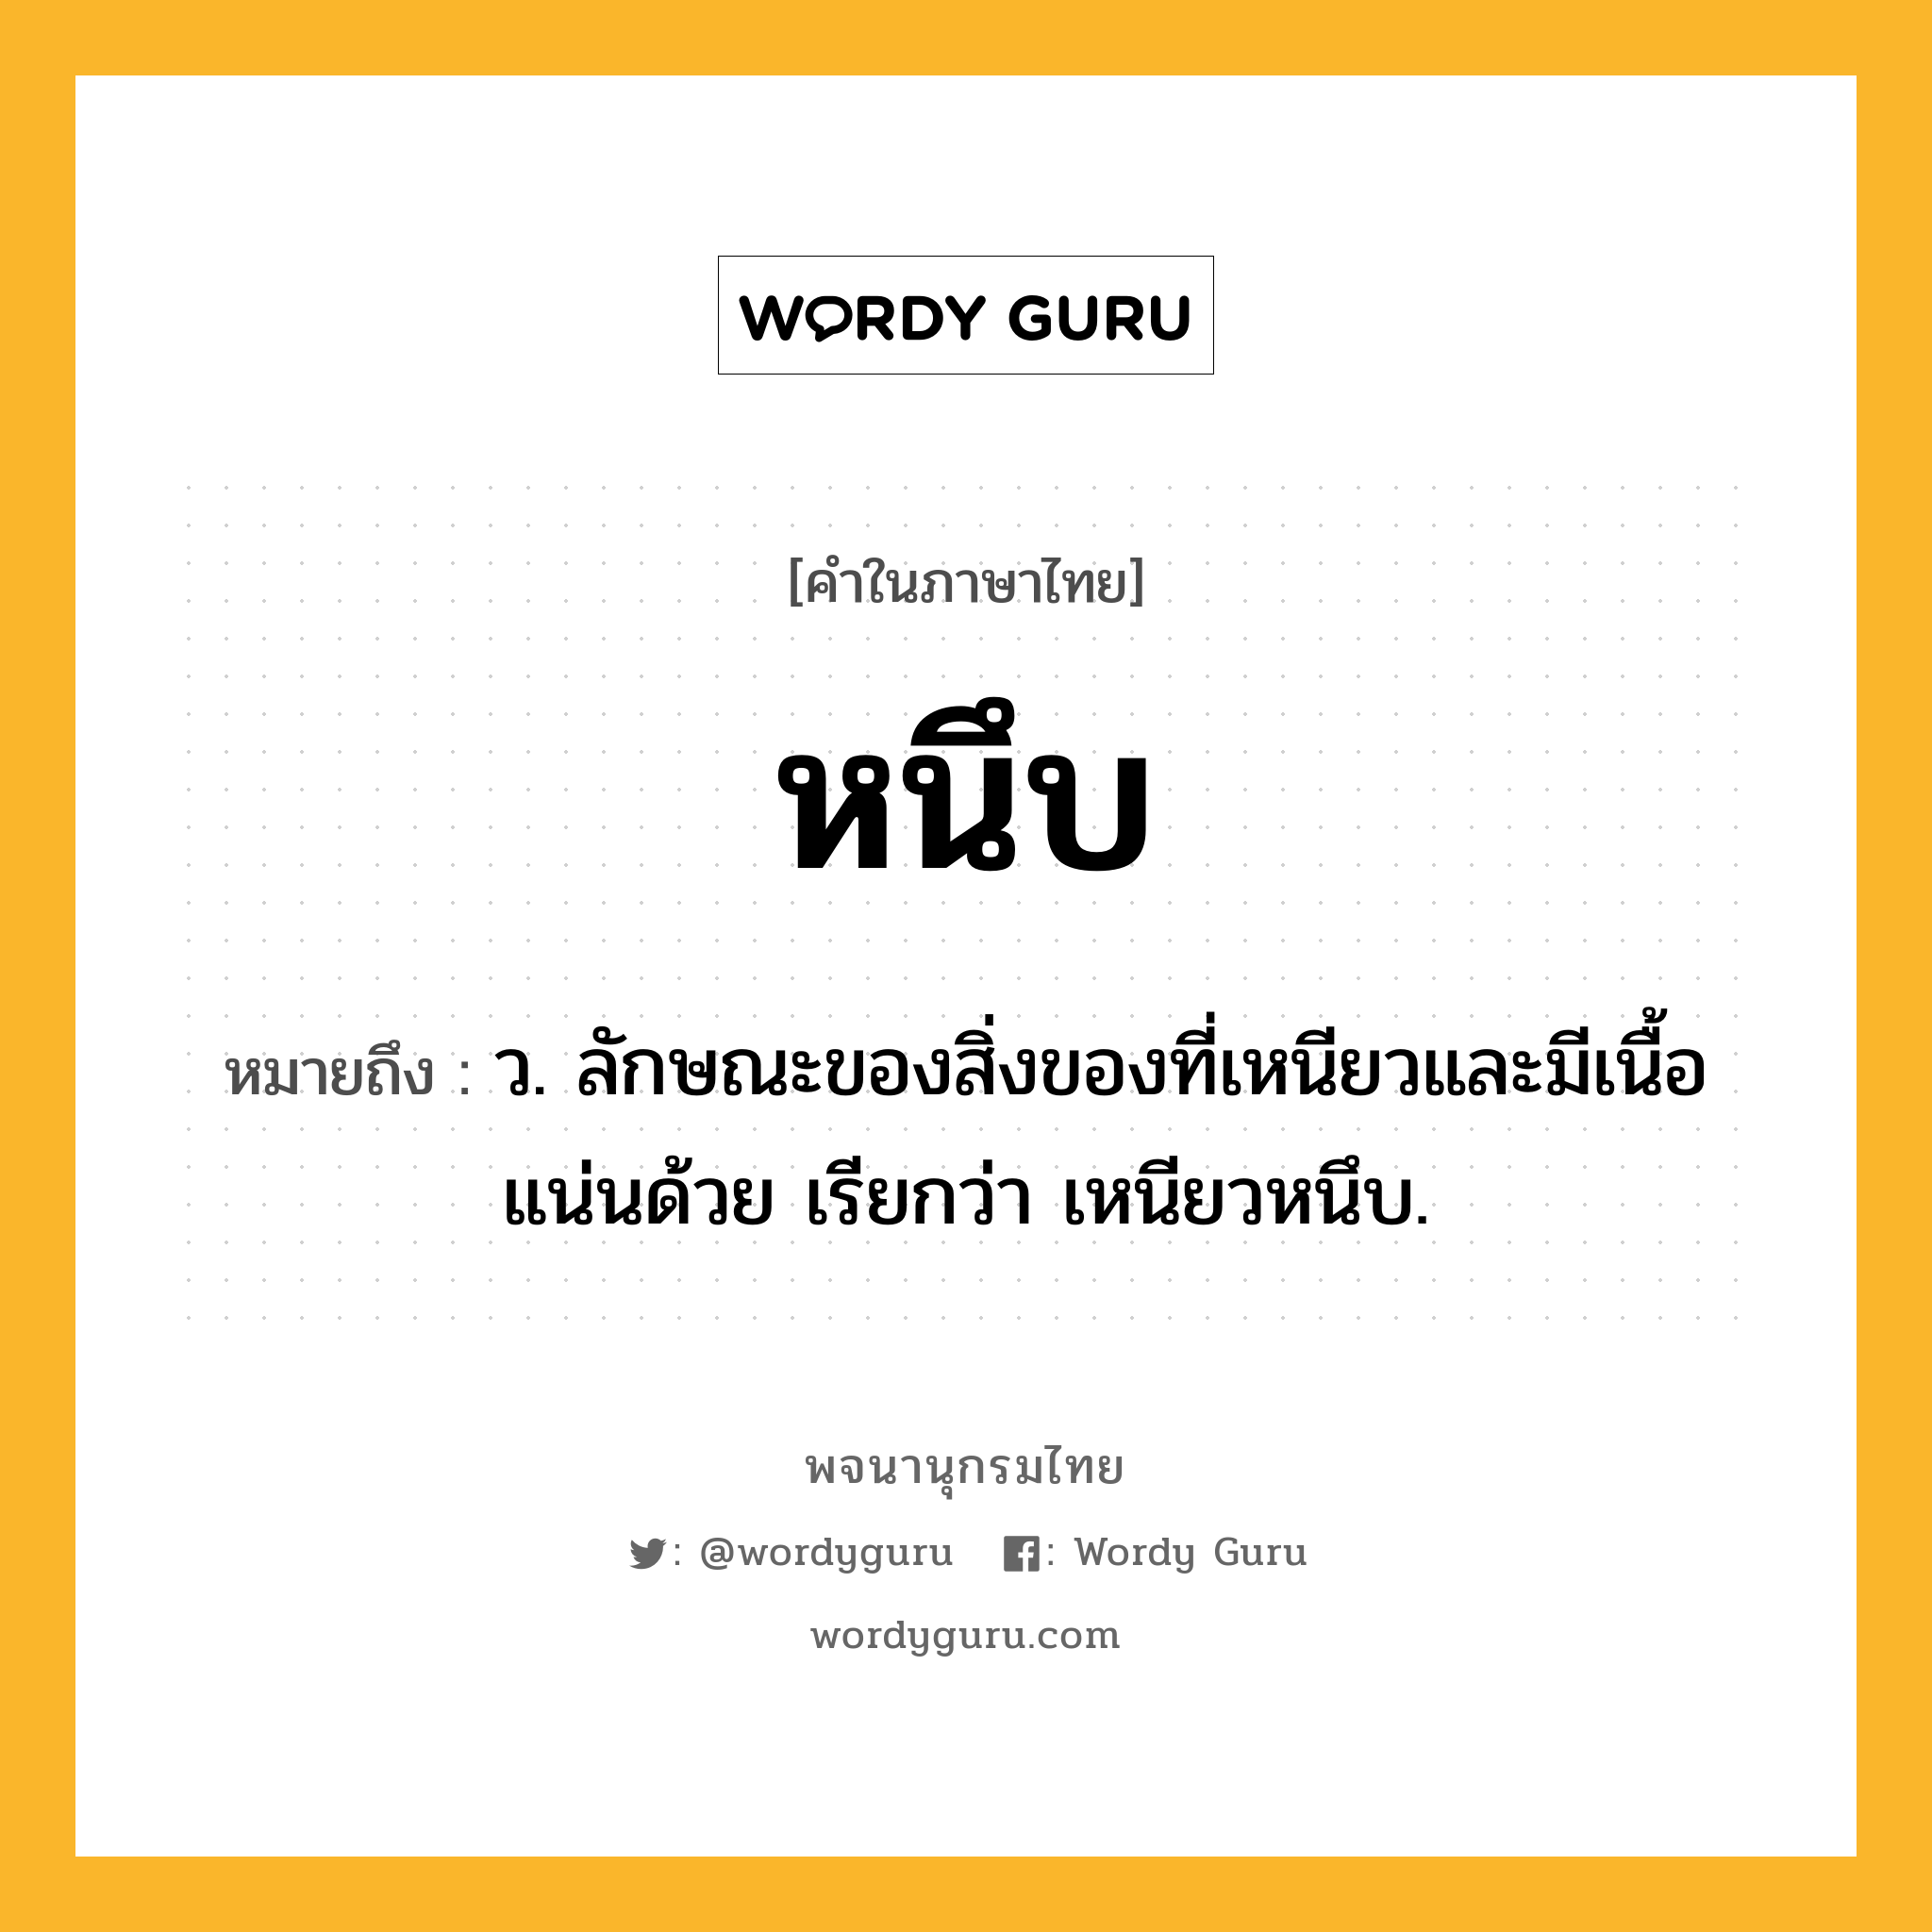 หนึบ หมายถึงอะไร?, คำในภาษาไทย หนึบ หมายถึง ว. ลักษณะของสิ่งของที่เหนียวและมีเนื้อแน่นด้วย เรียกว่า เหนียวหนึบ.